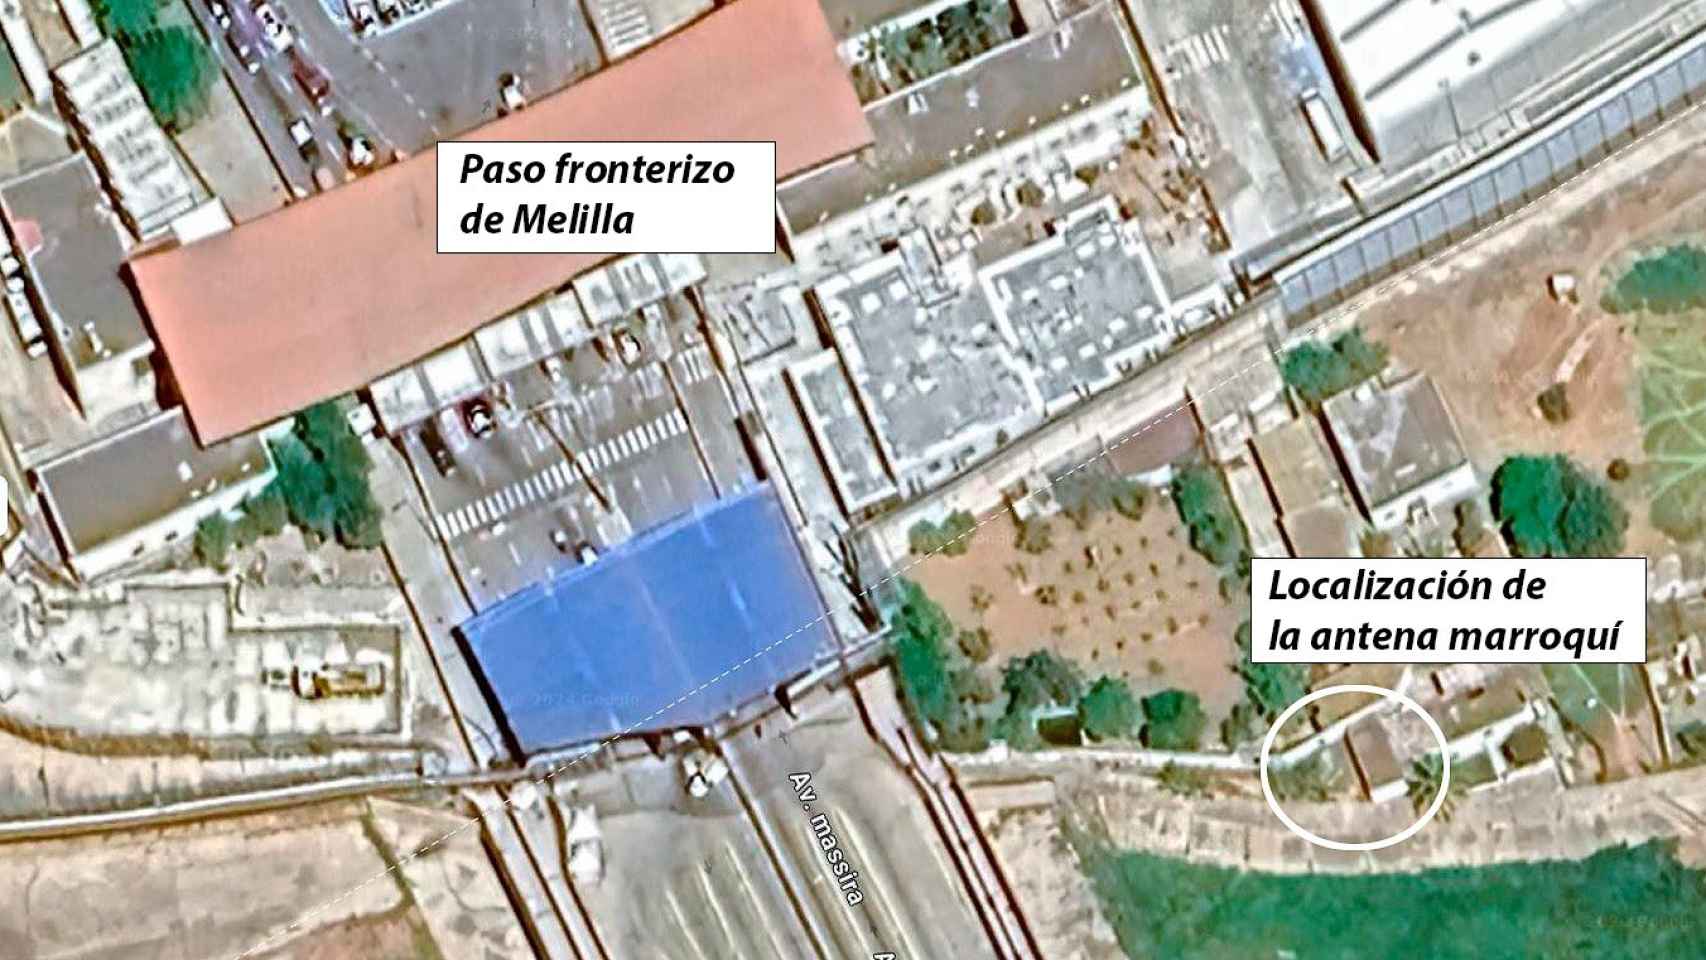 Vista aérea del lugar donde se ha colocado la antena, muy cerca del paso fronterizo de Melilla.